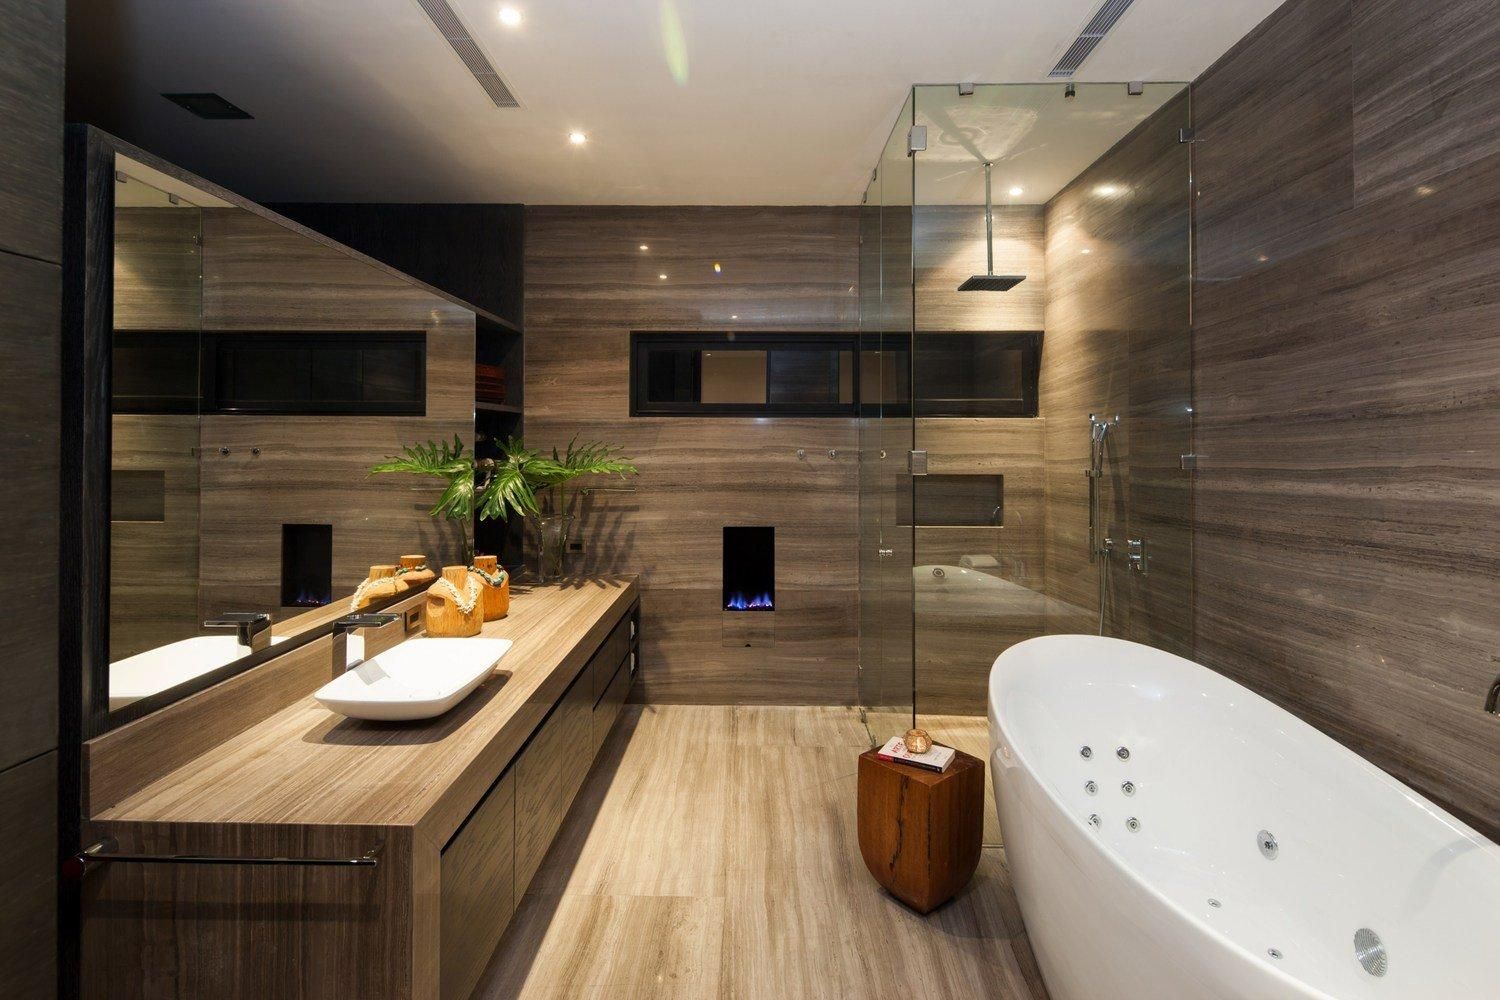 Ванная комната-2021: дизайнер интерьера назвала свежие фишки